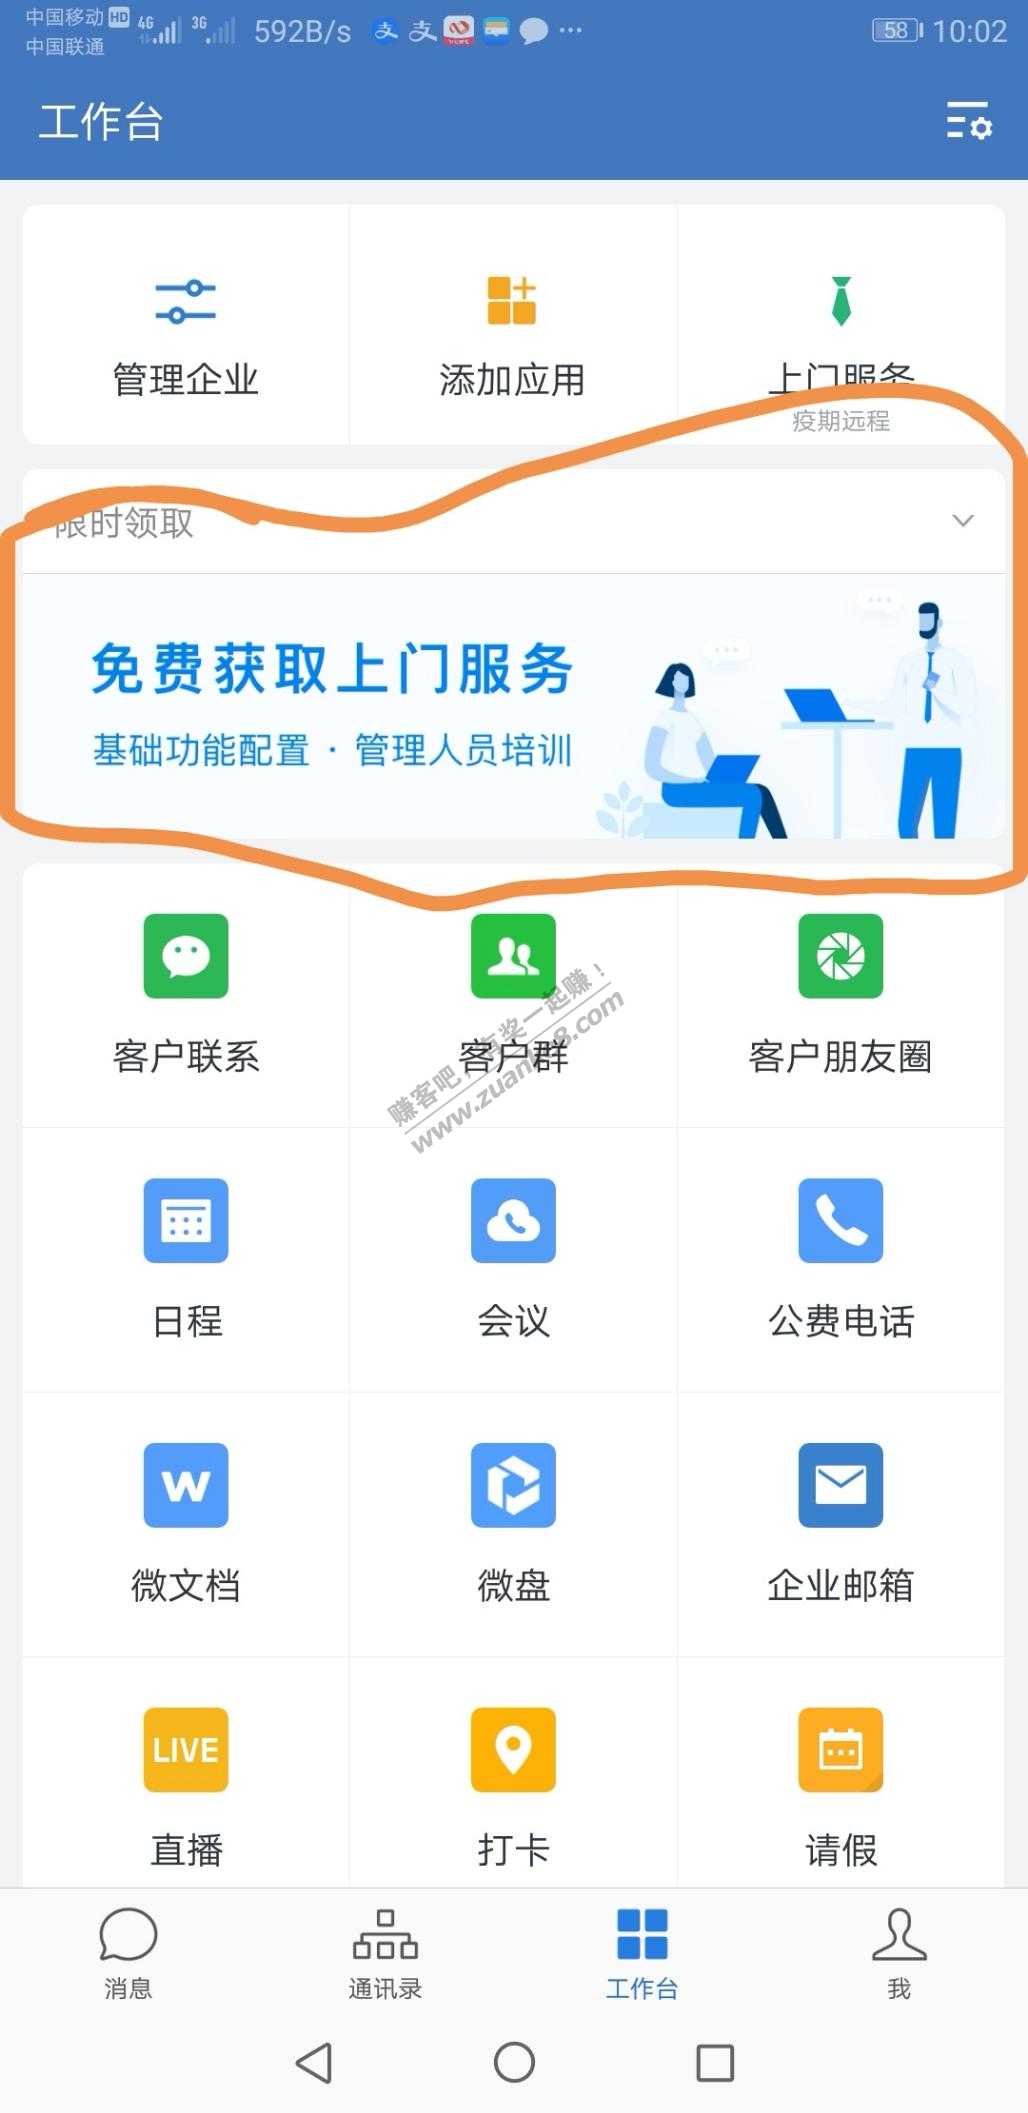 企业微信9.9元打卡机-惠小助(52huixz.com)